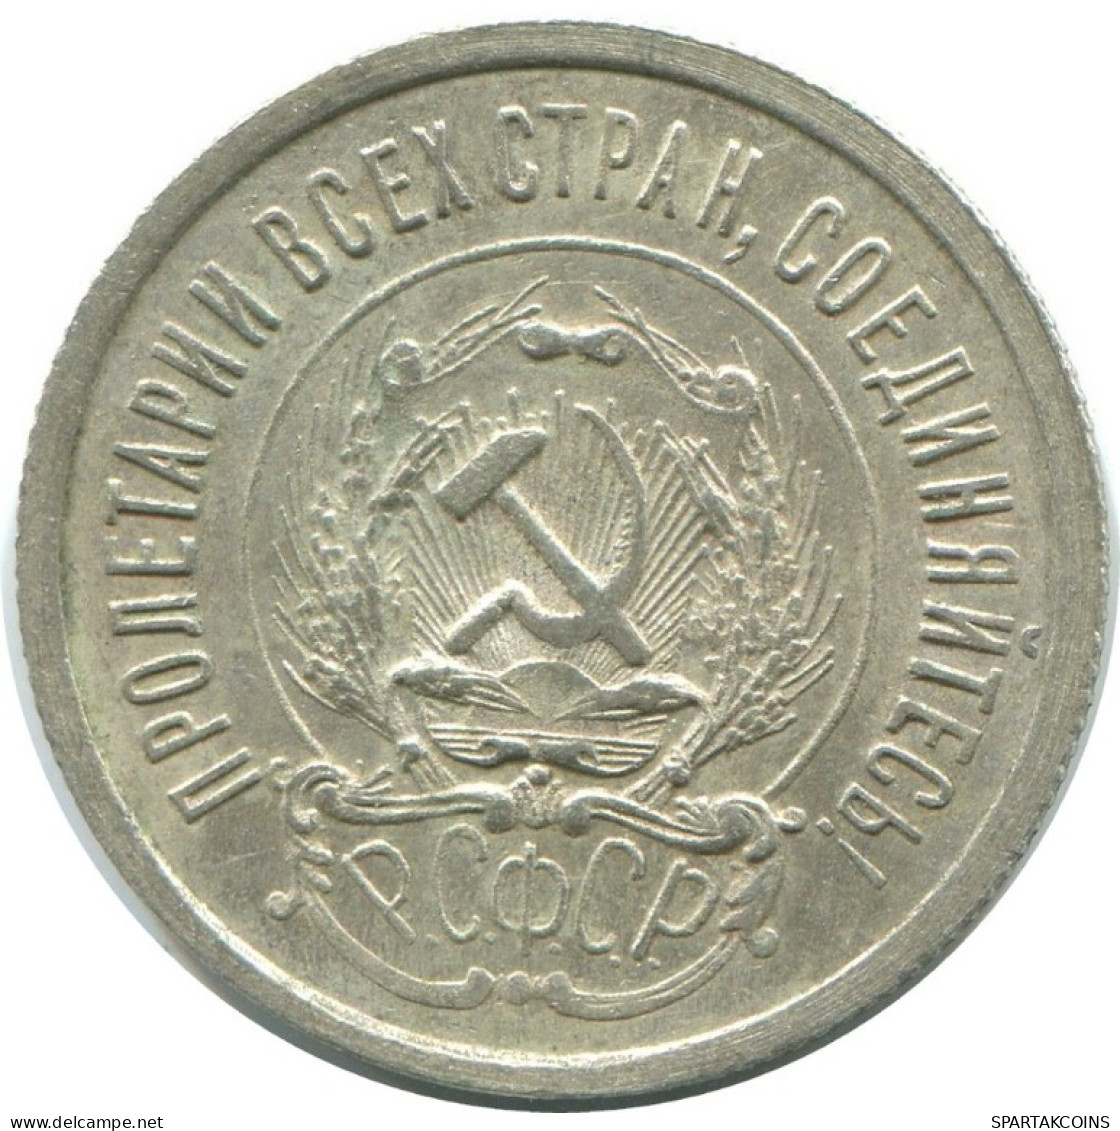 20 KOPEKS 1923 RUSSIA RSFSR SILVER Coin HIGH GRADE #AF612.U.A - Russland